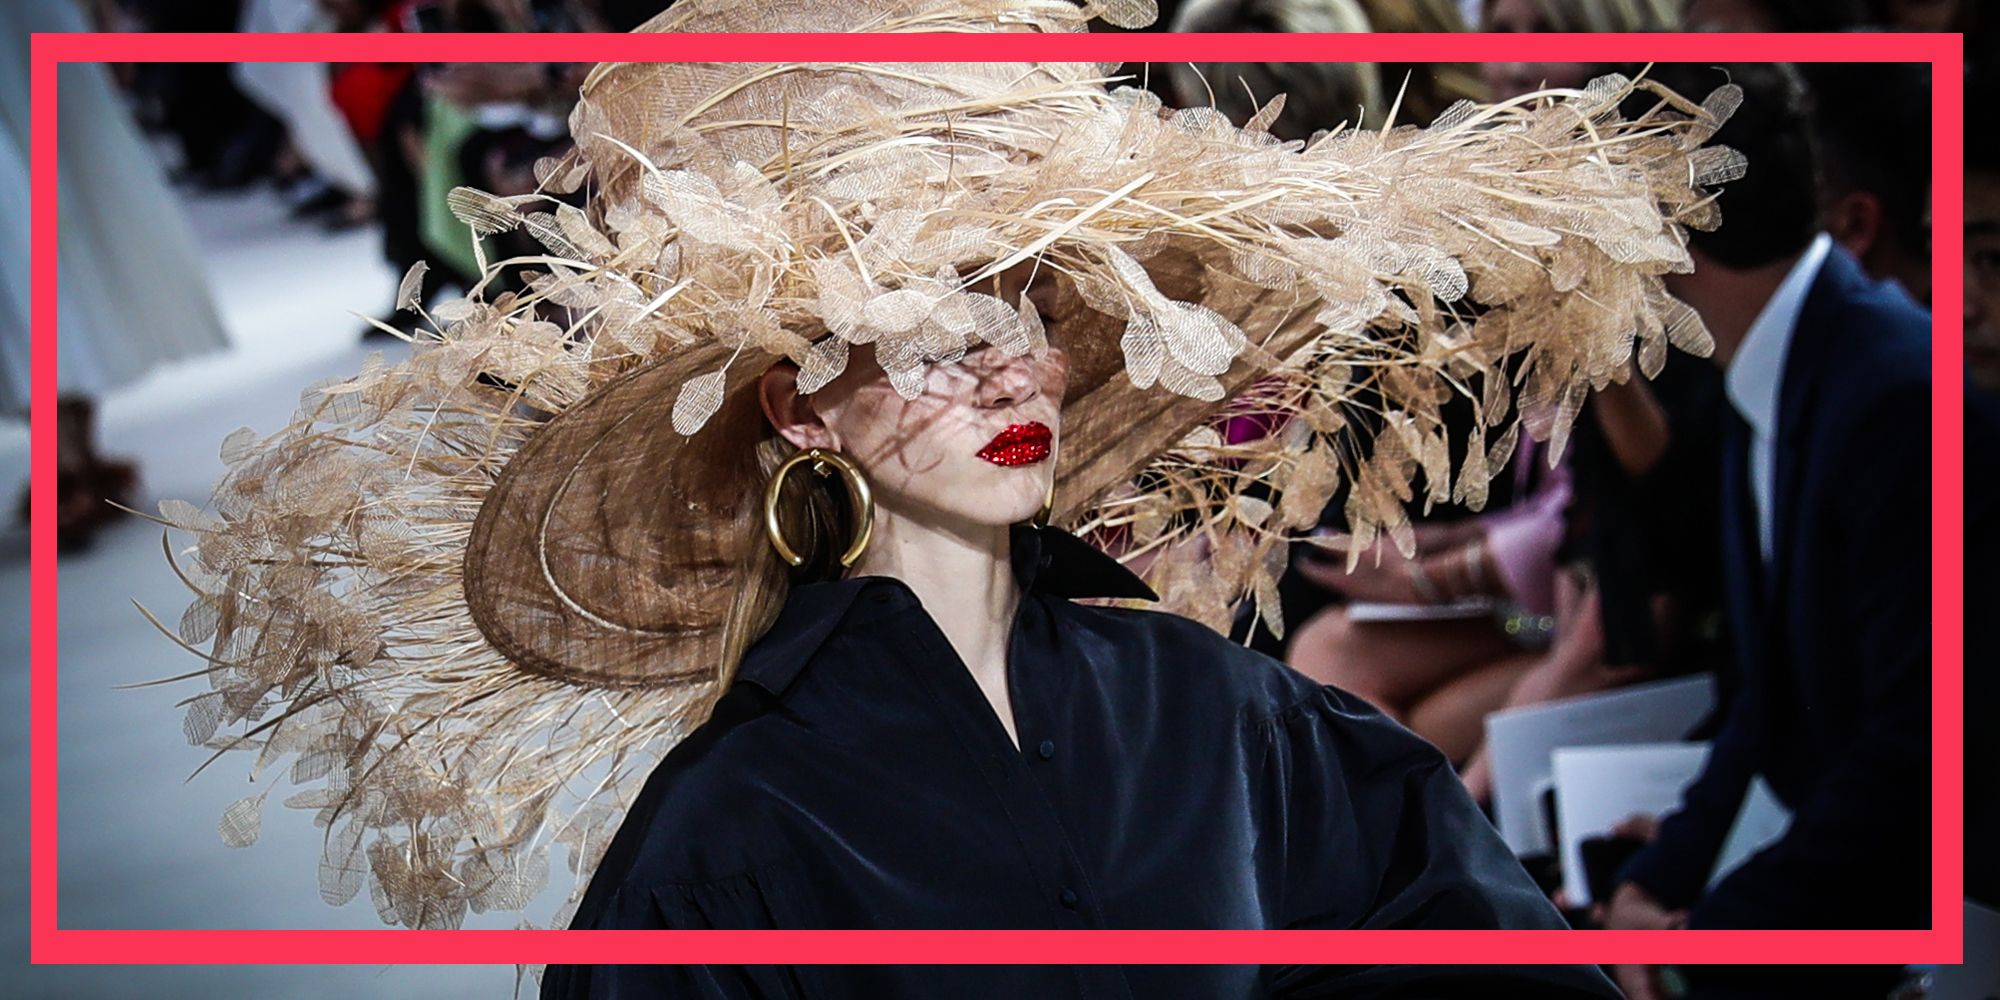 Il Fashion Month primavera estate 2020 con la Parigi Fashion Week di settembre 2019 giunge al termine tra eventi, sfilate e mostre -Karl Lagerfeld- e magia.